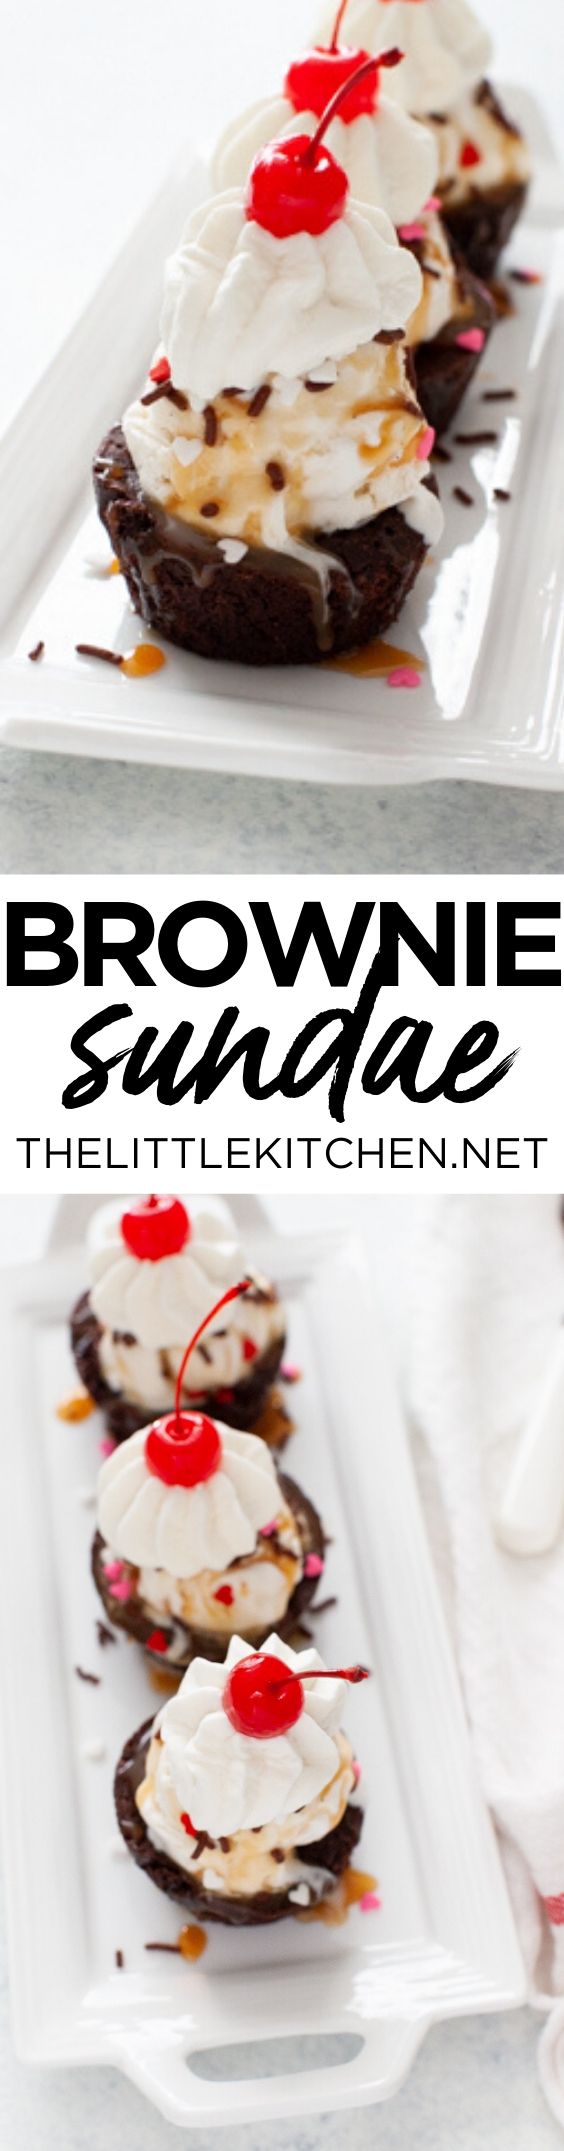 Brownie Sundae from thelittlekitchen.net